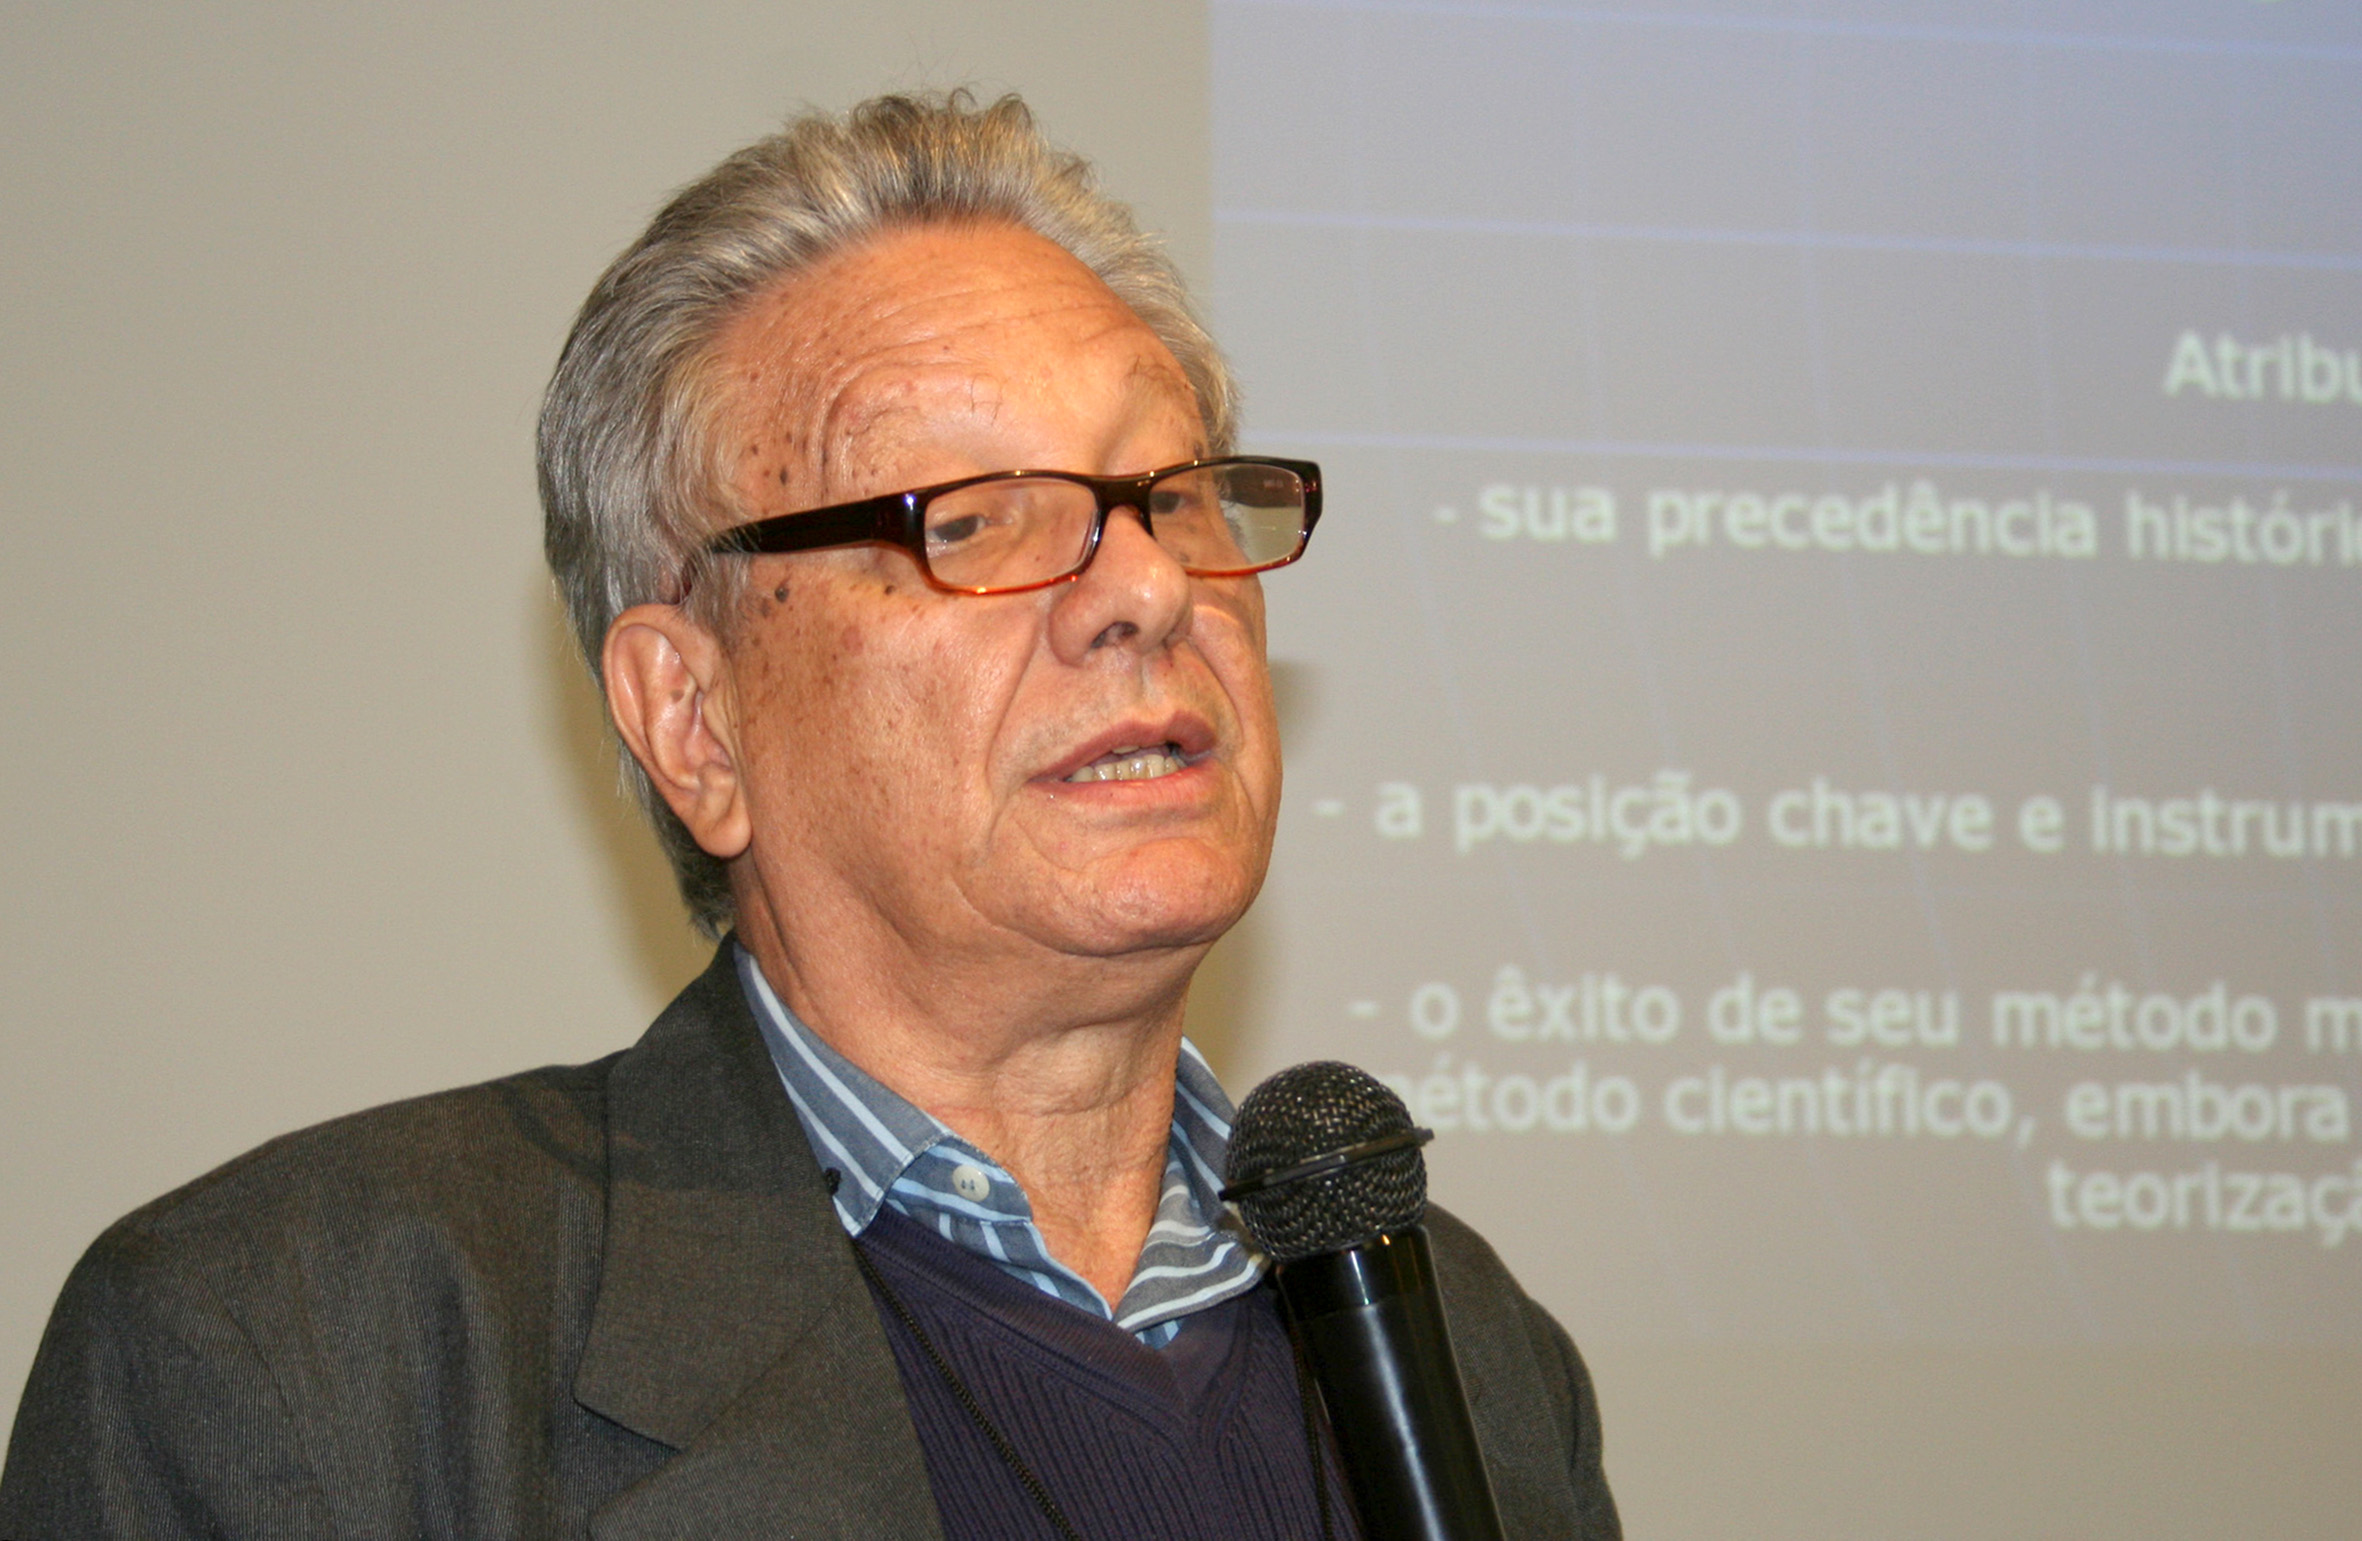 Luiz Pinguelli Rosa